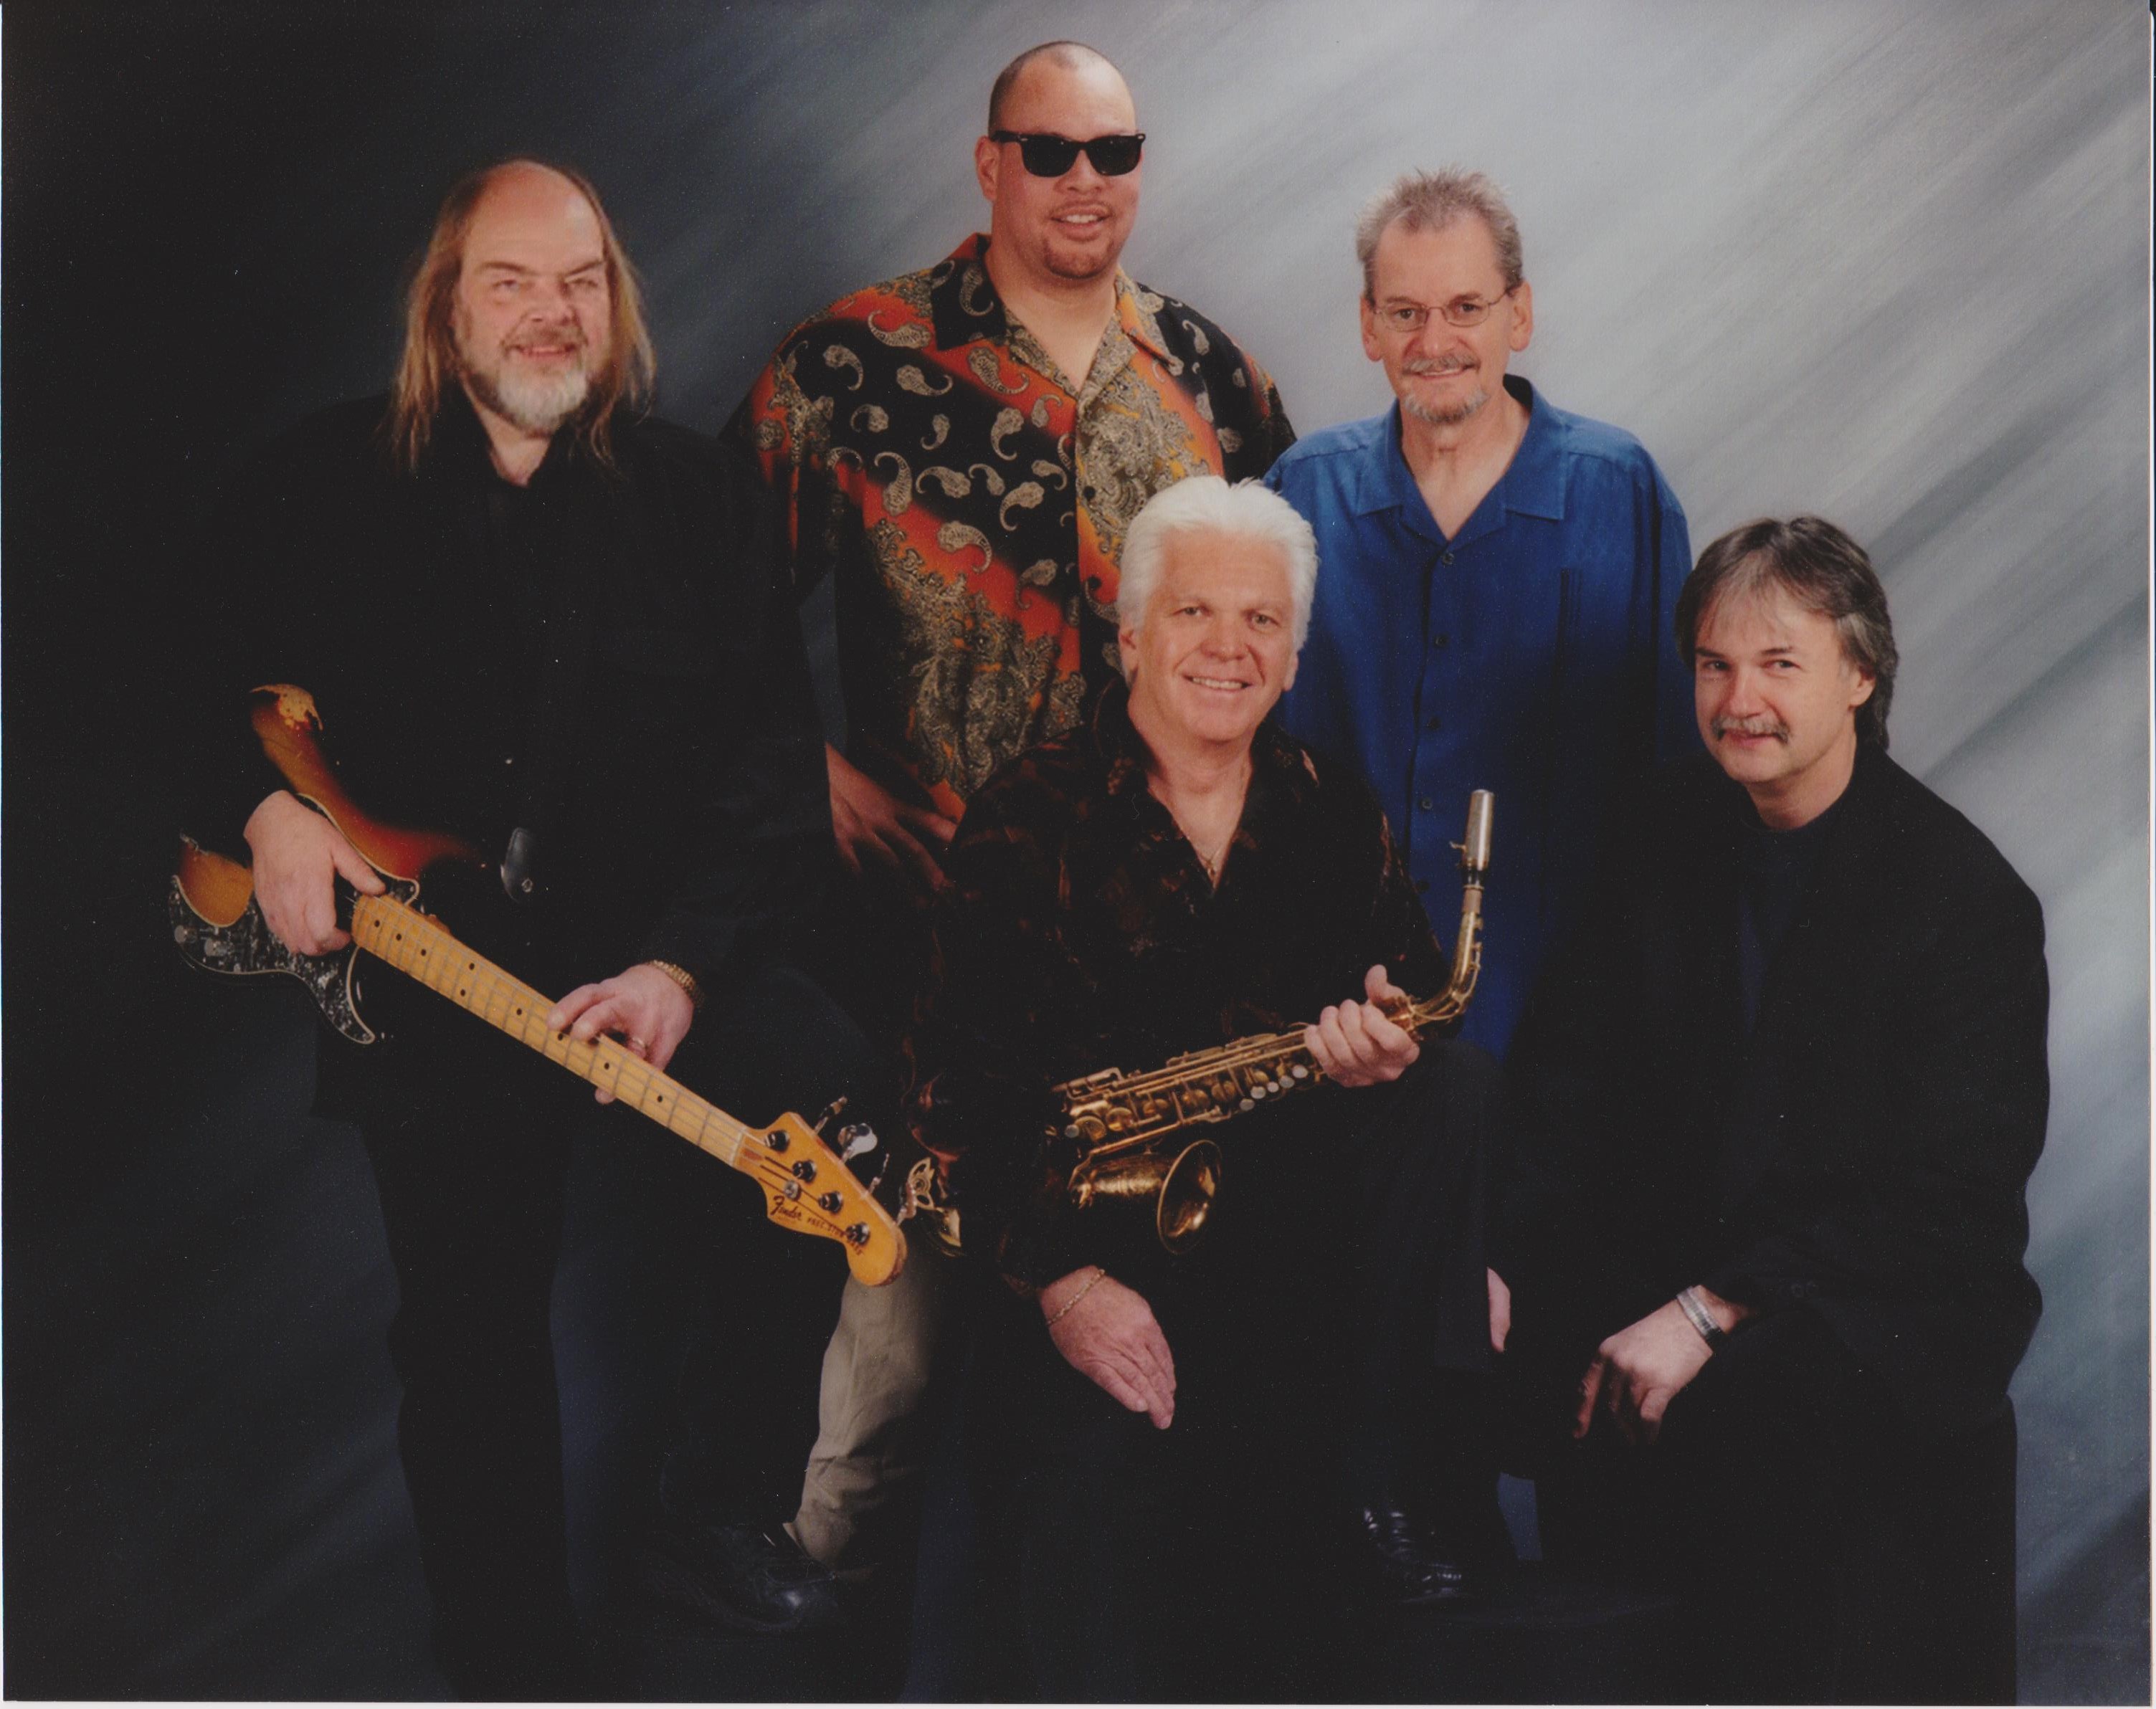 Promo image of Rare Earth band